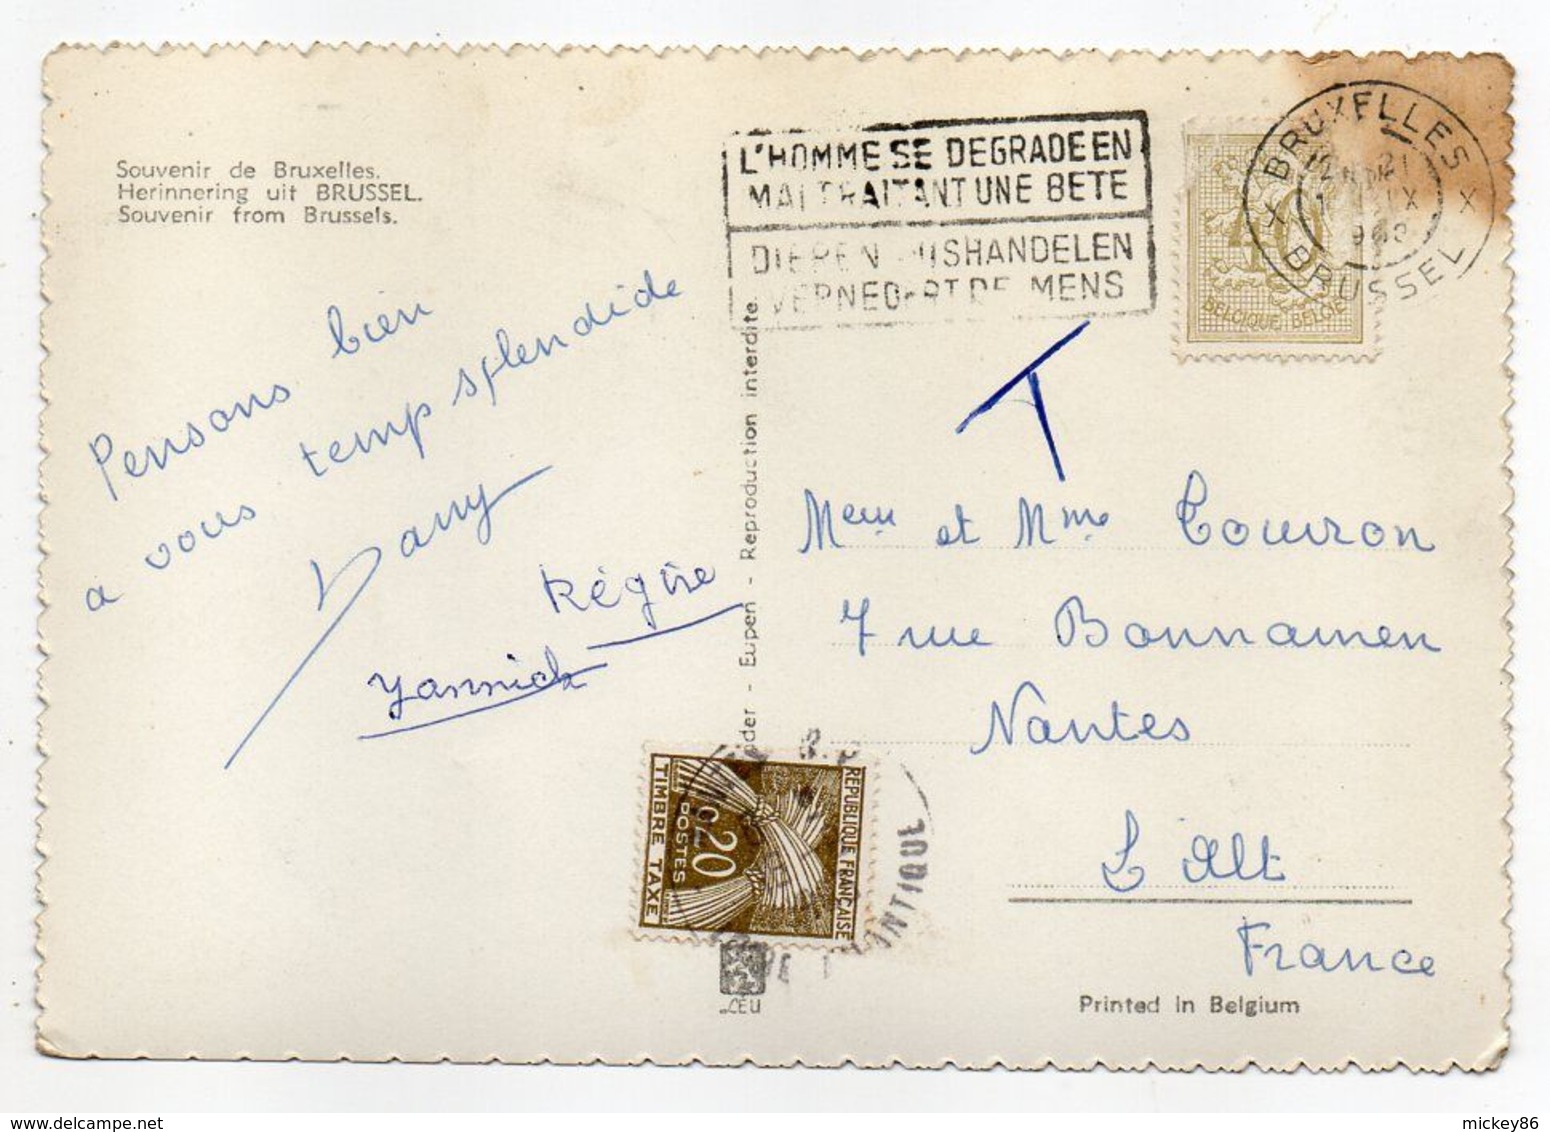 Belgique--carte Postale Taxée De Bruxelles Pour Nantes-44 (France)--Souvenir De Bruxelles La Nuit -Multivues - Lettres & Documents